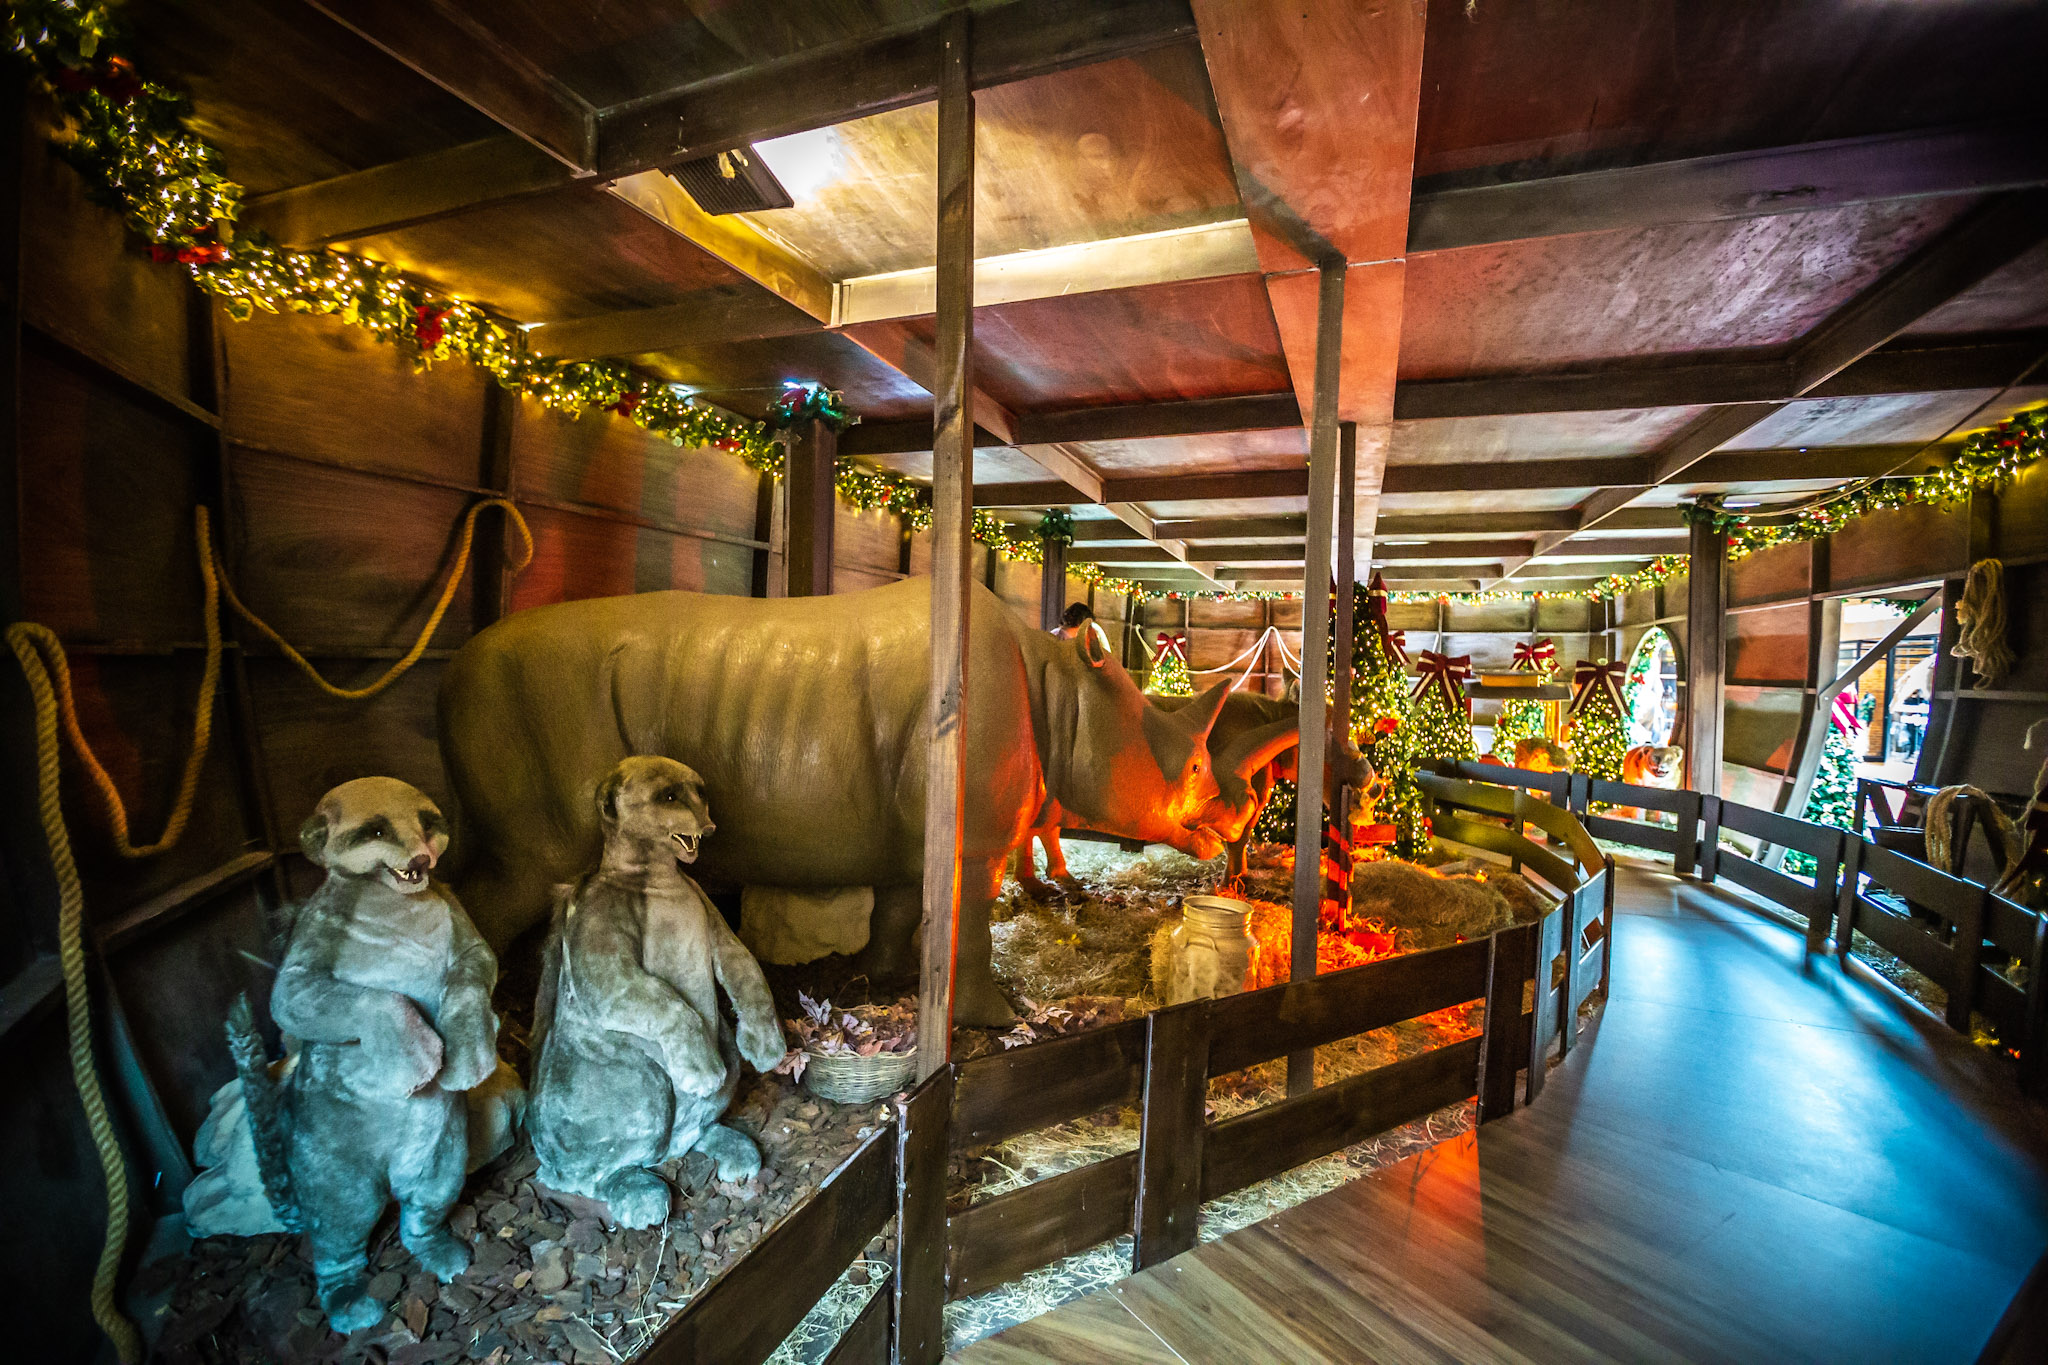 RibeirãoShopping traz a “Arca do Noel” para a sua decoração de Natal